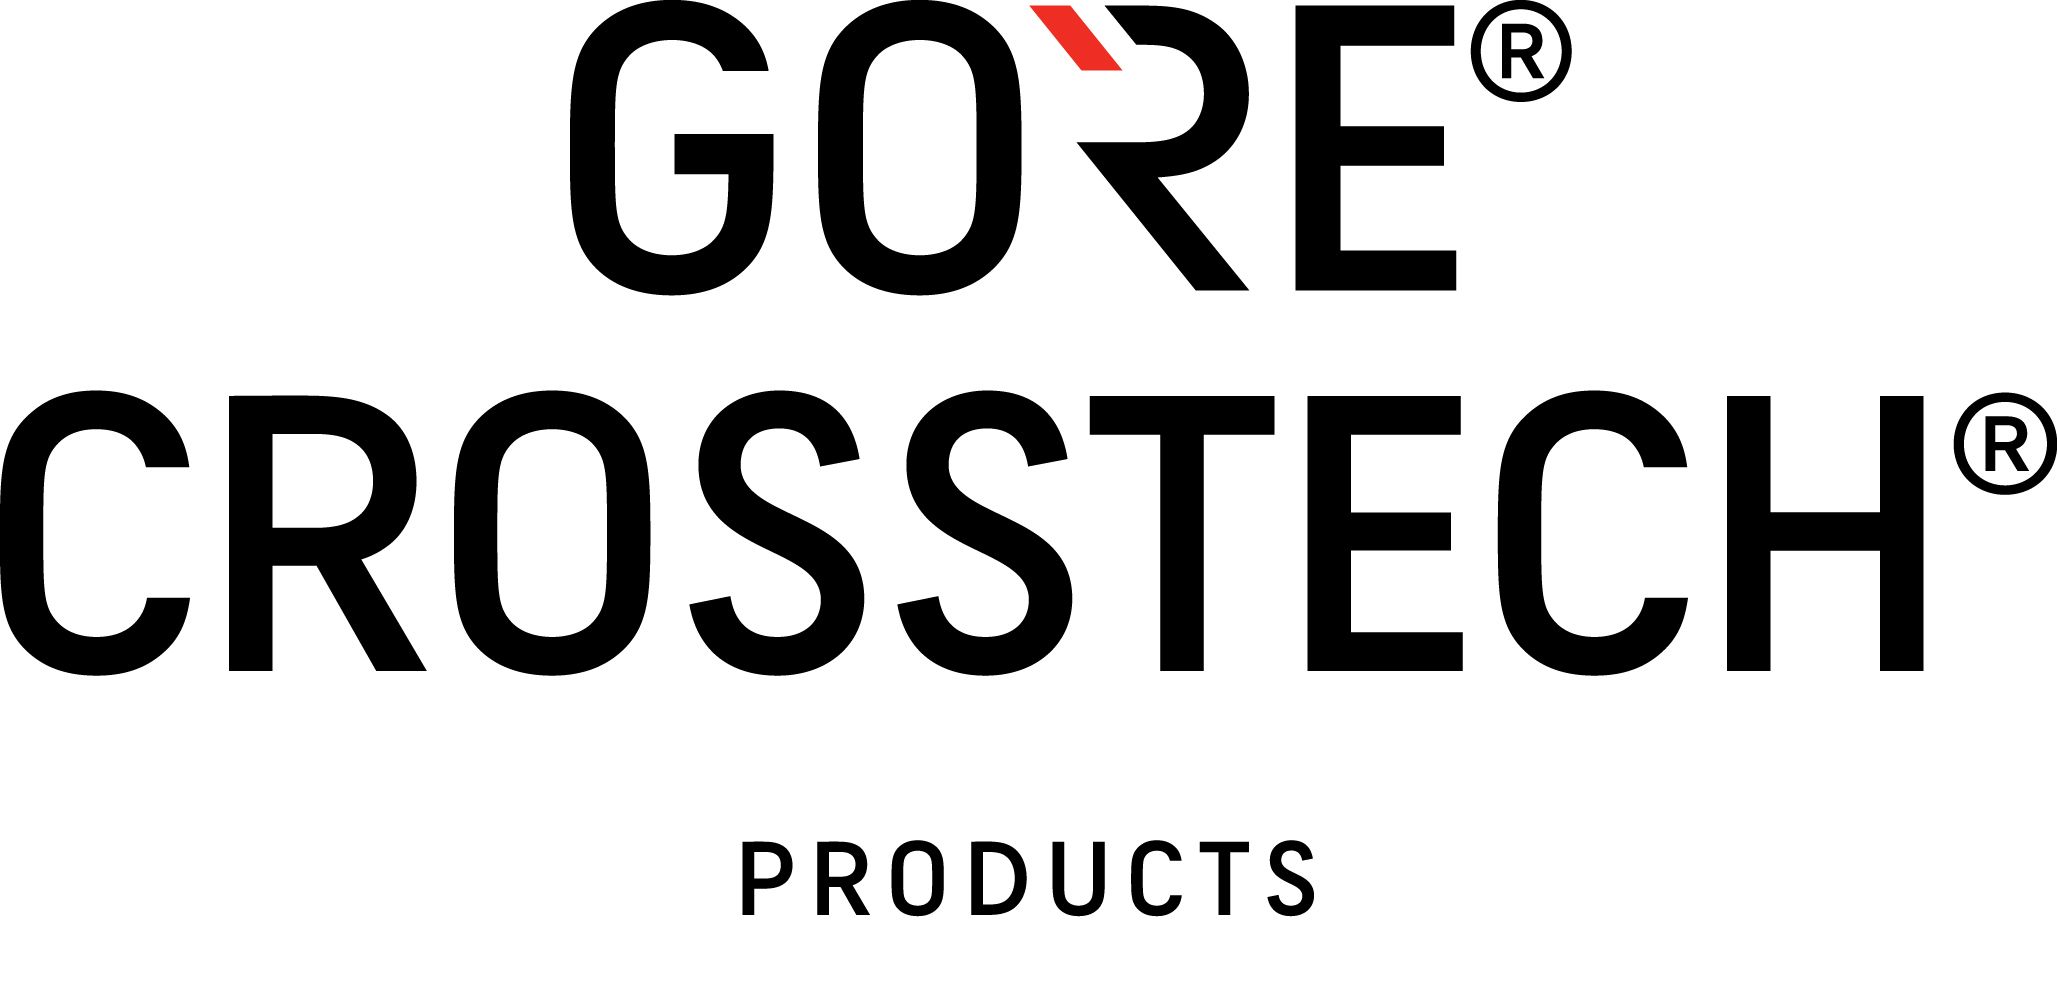 Gore CROSSTECH logo